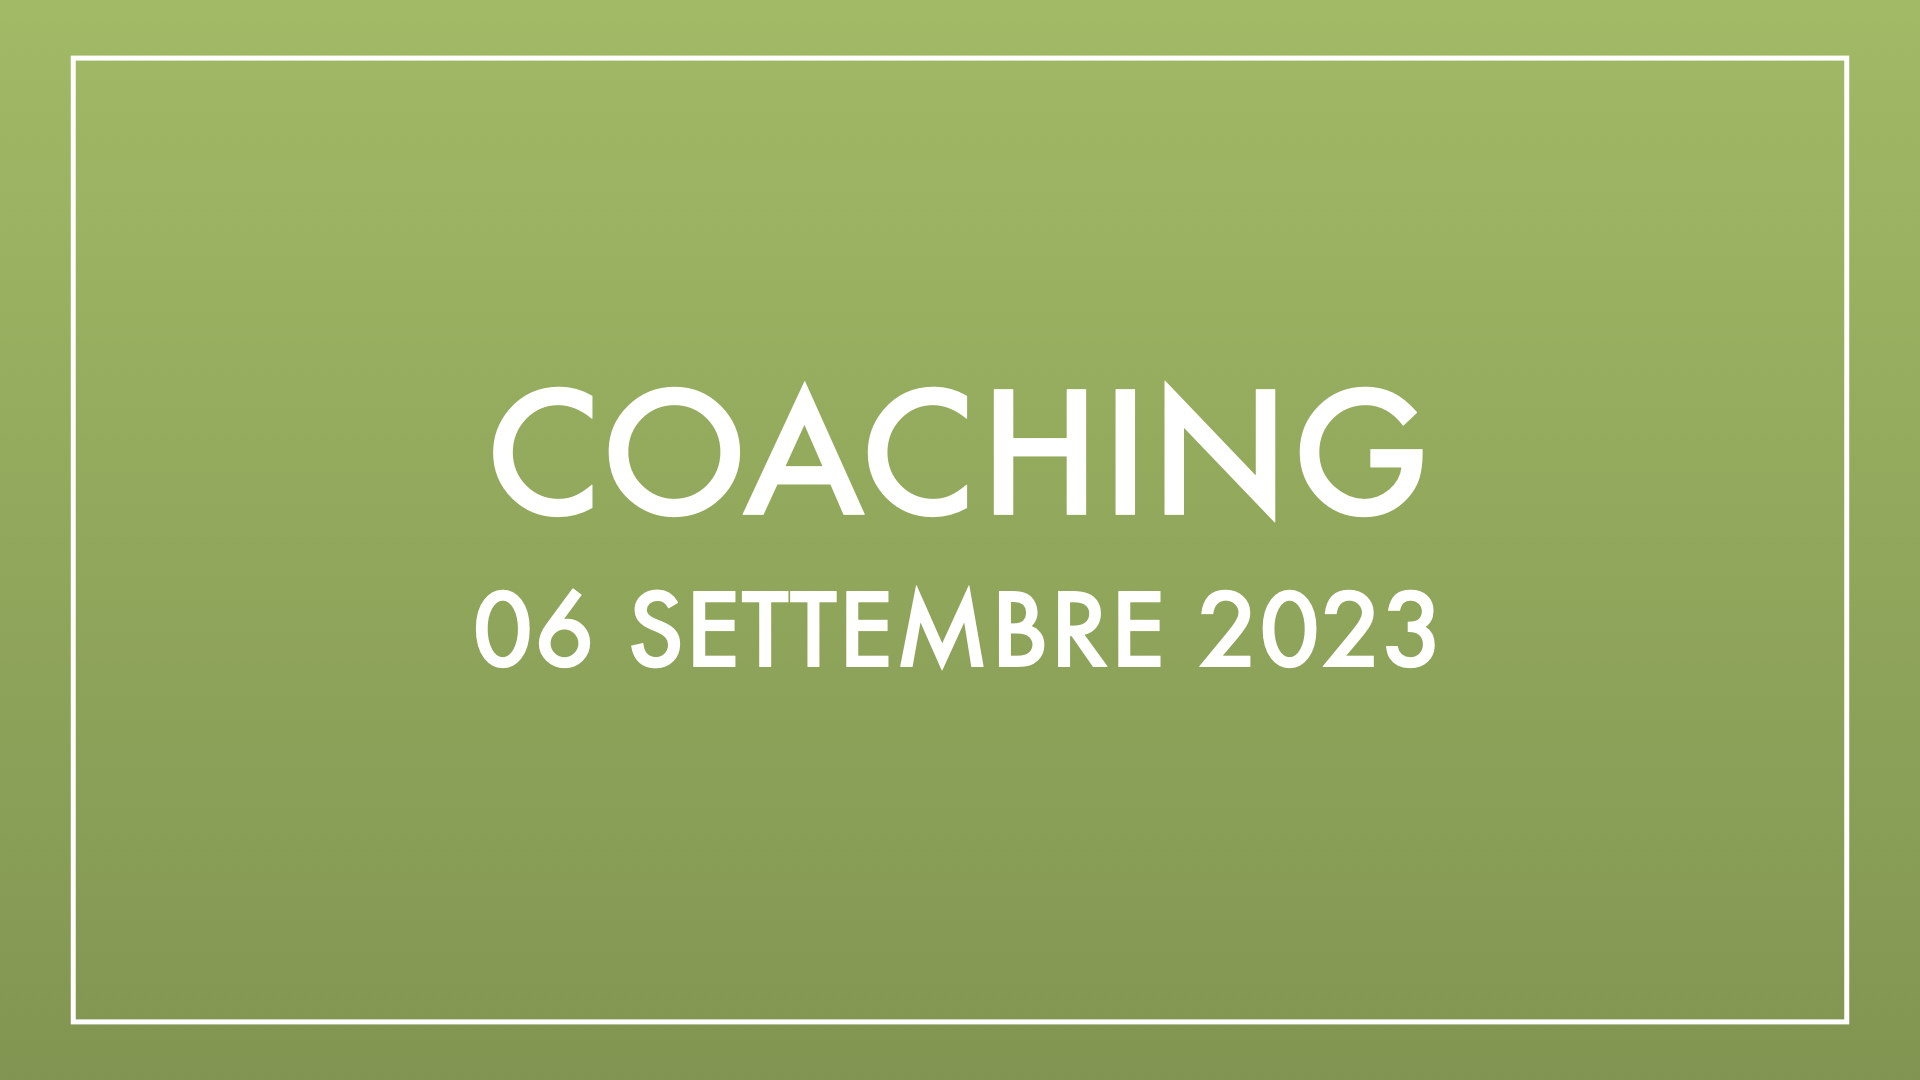 Coaching 06 settembre 2023